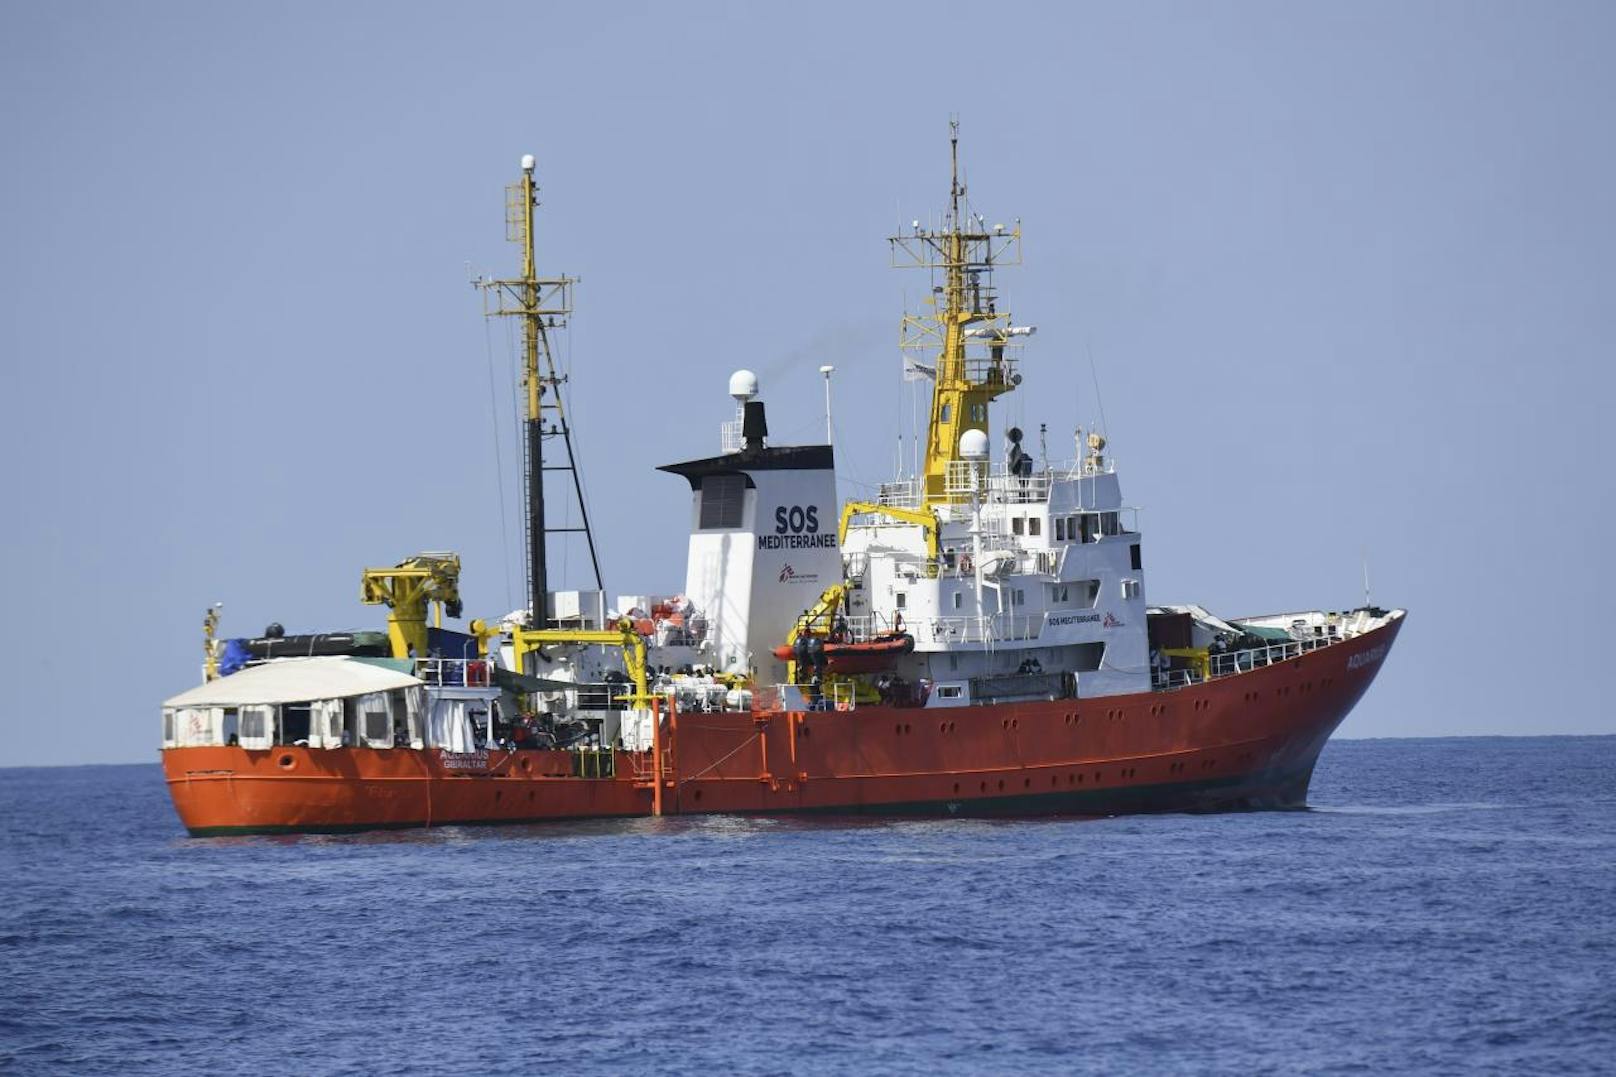 629 Flüchtlinge mussten an Bord der "Aquarius" ausharren, nachdem sie von einer französischen NGO aus Seenot gerettet wurden. Italien hatte dem Schiff verboten anzulegen.